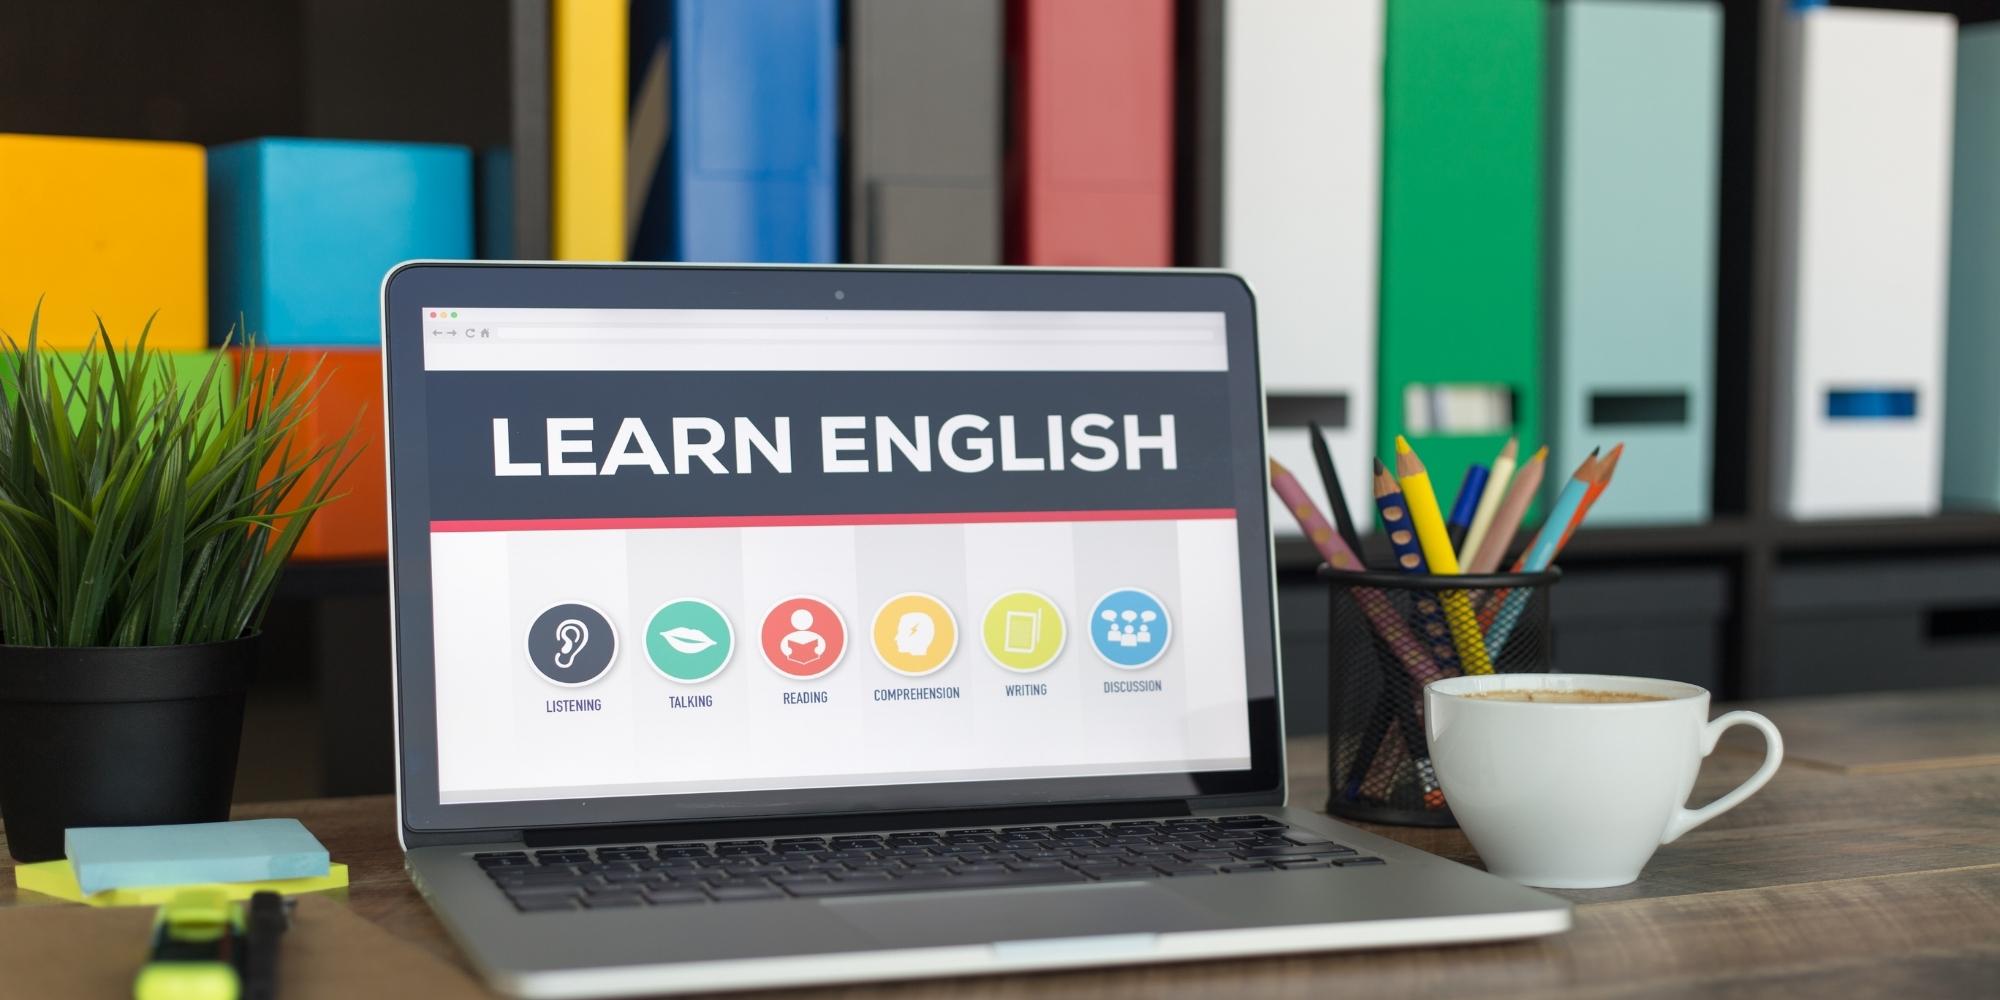 Tài liệu học ngoại ngữ trực tuyến ngày càng thuận tiện